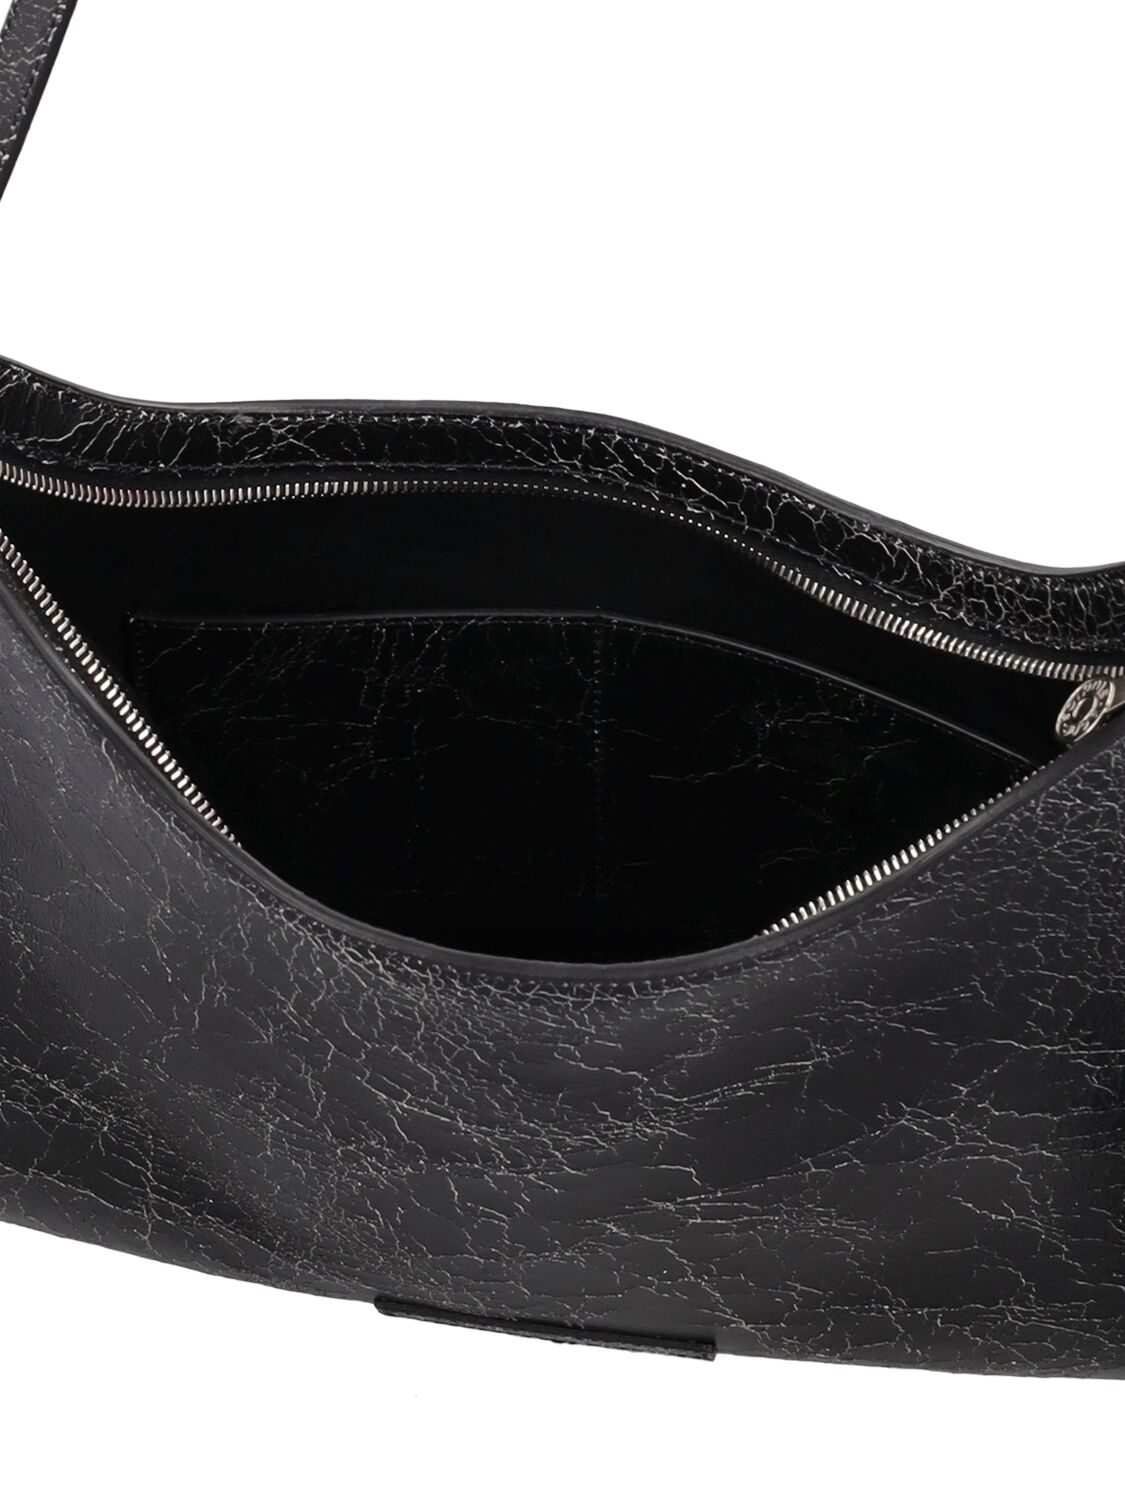 Shop Acne Studios Platt Wrinkled Leather Shoulder Bag In Black